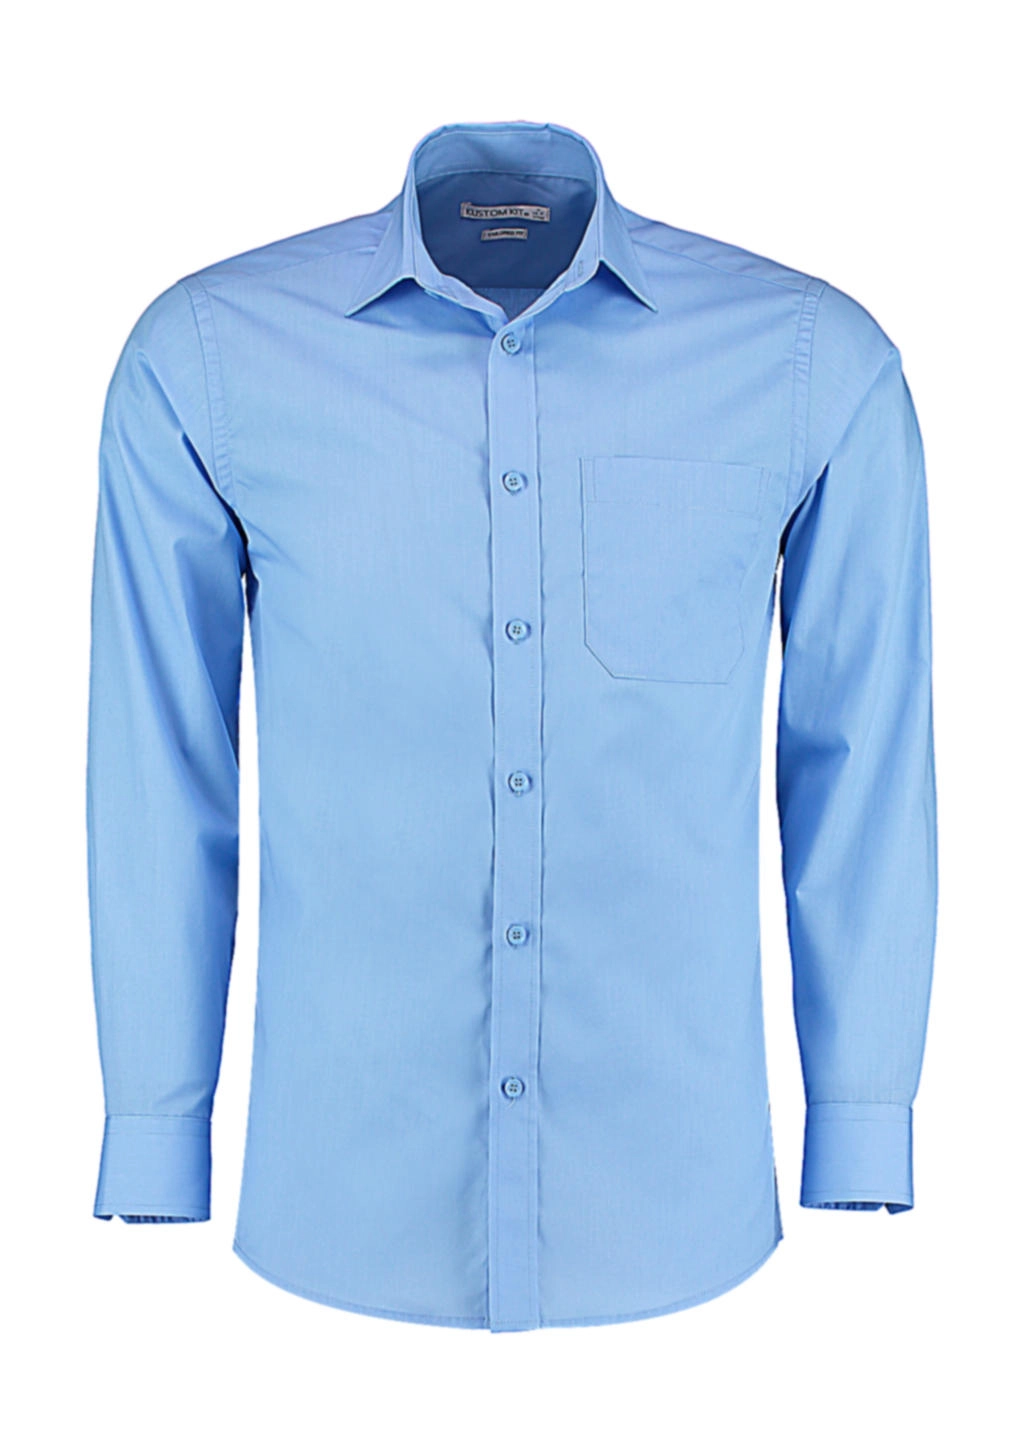 Tailored Fit Poplin Shirt zum Besticken und Bedrucken in der Farbe Light Blue mit Ihren Logo, Schriftzug oder Motiv.